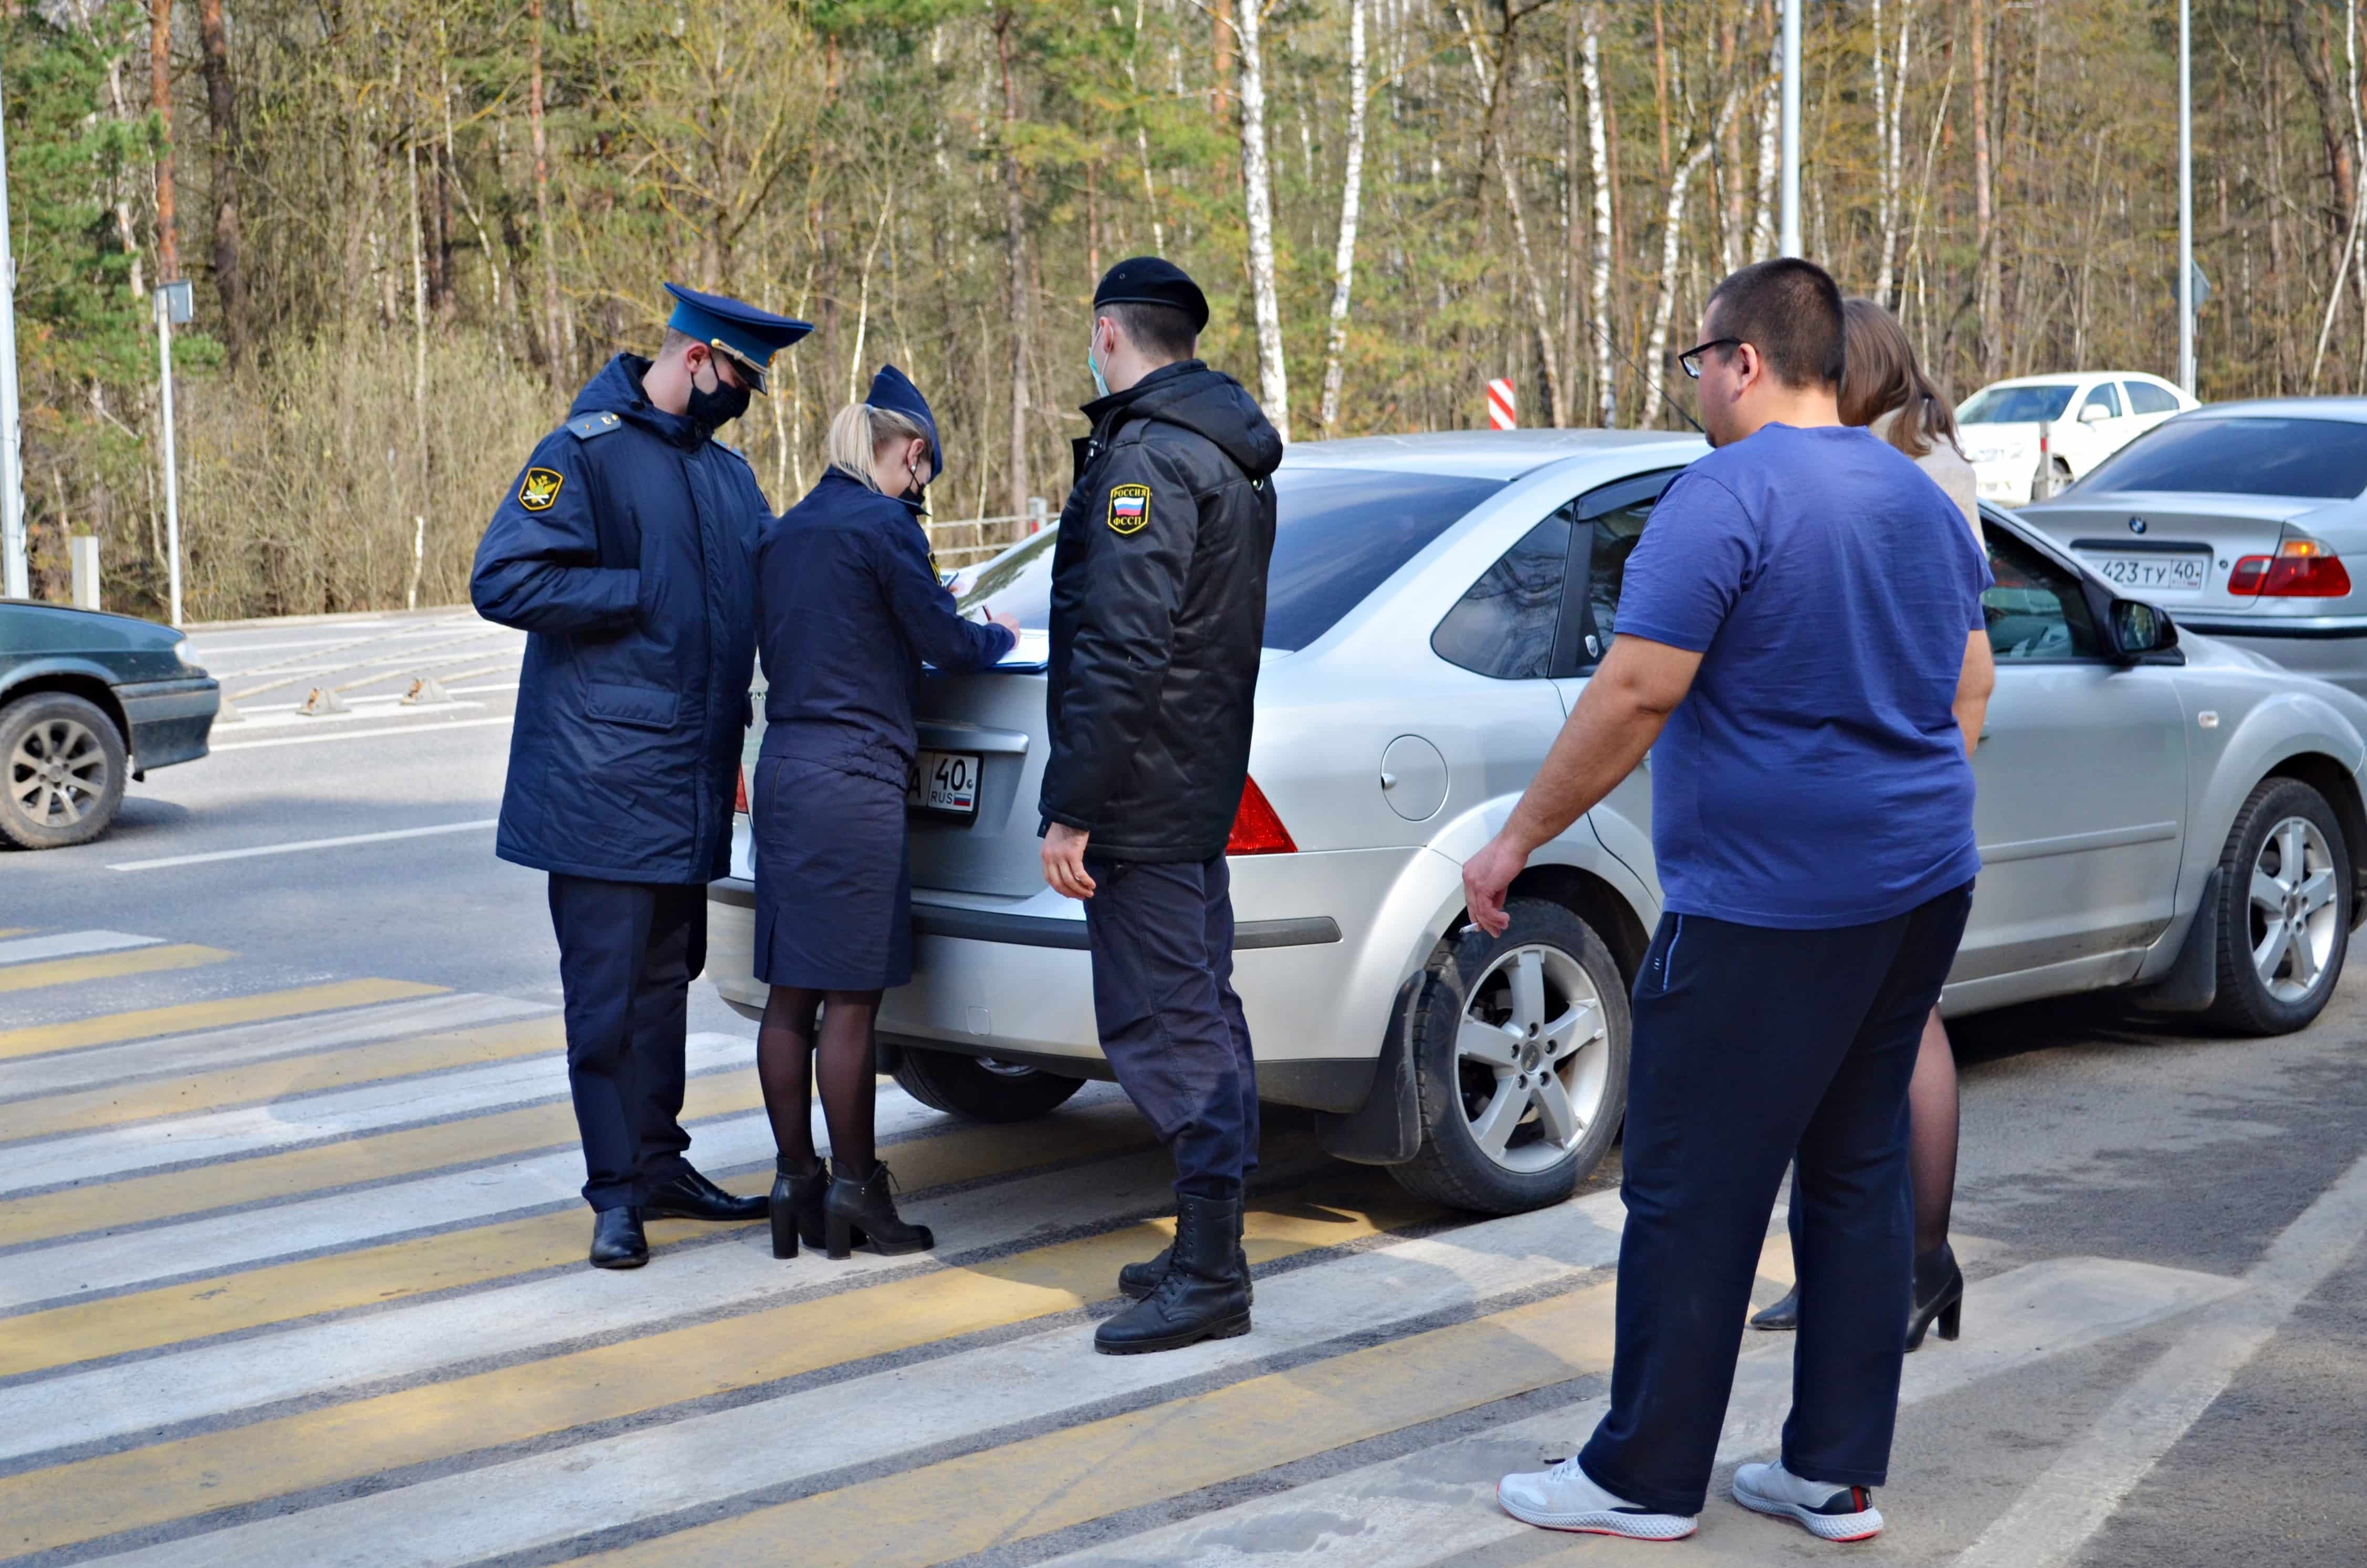 Рейд судебных приставов. Машина под арестом. Приставы арестовали машину за долги в Иваново. Судебная машина. Арестованных автомобилей с пробегом